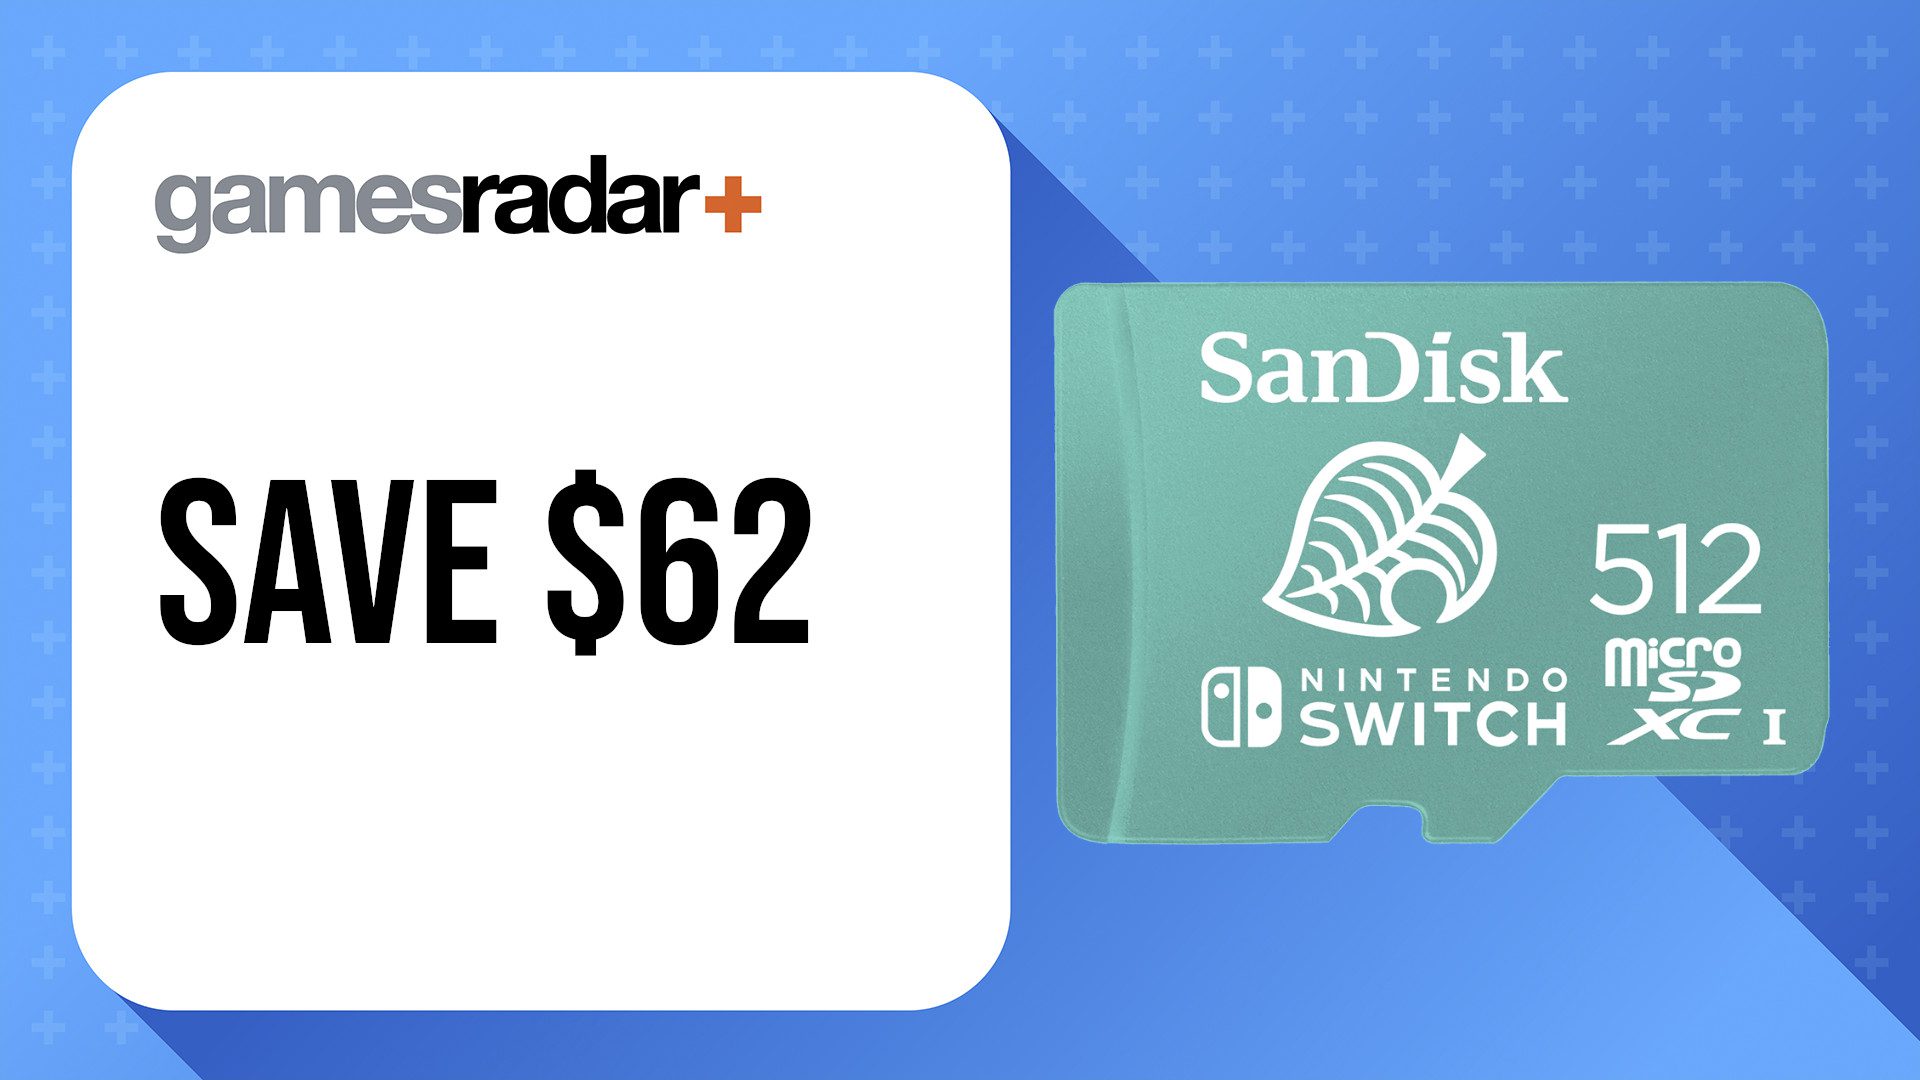 Oferta de cartão de memória Nintendo Switch